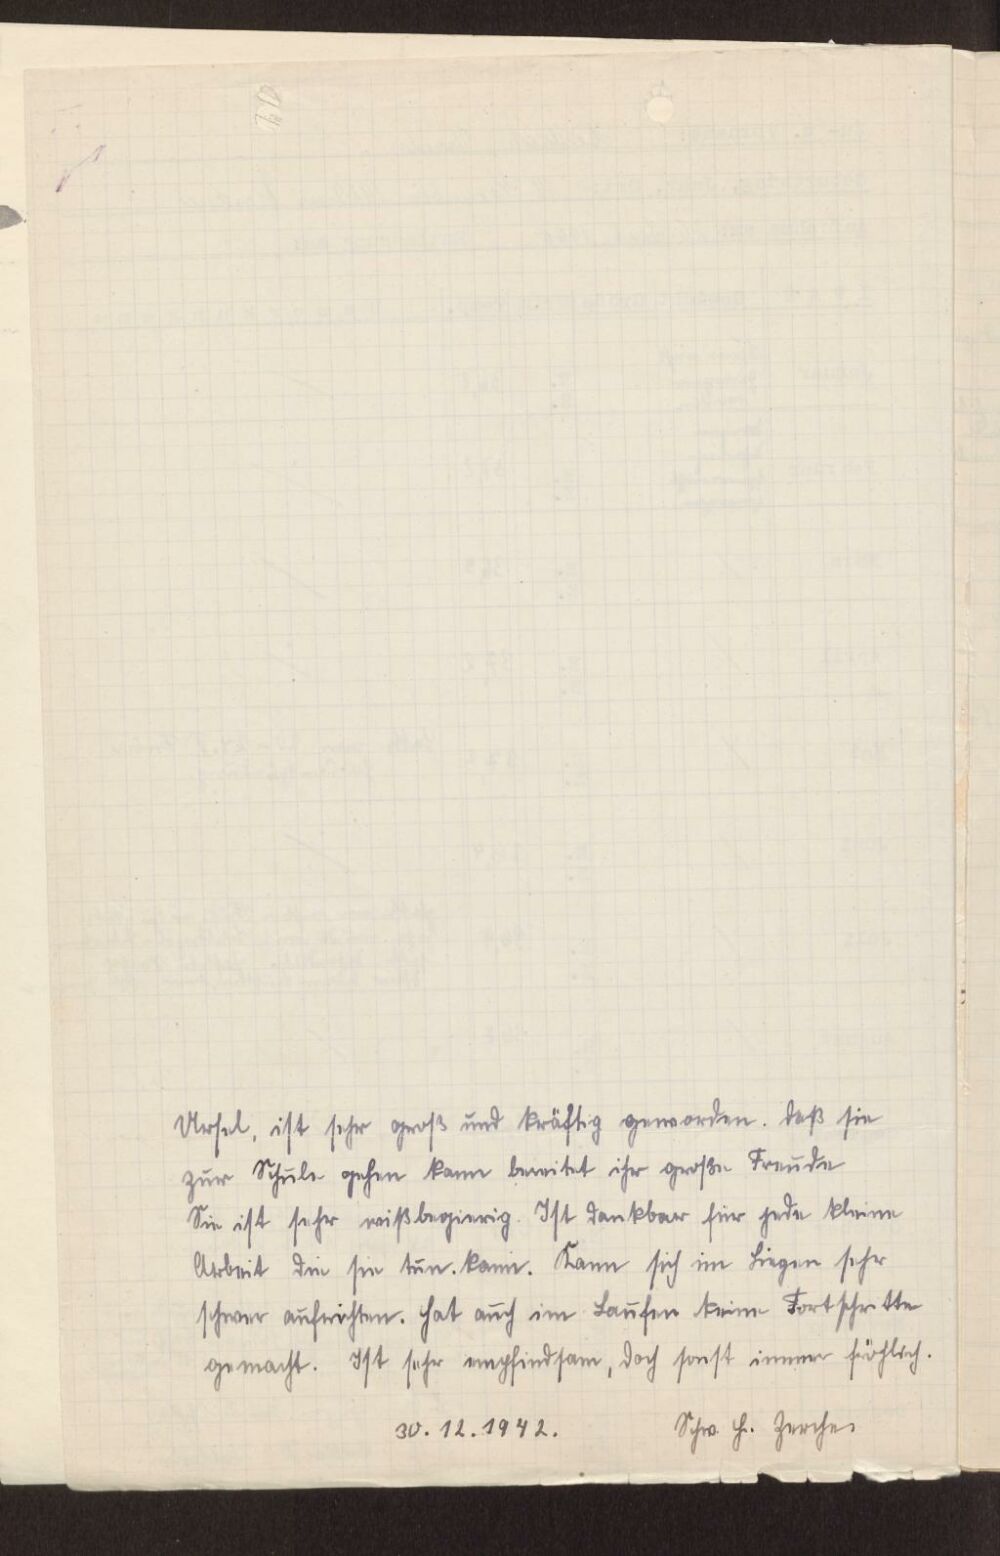 Jahresbericht aus der Epileptikeranstalt Kleinwachau vom 30. Dezember 1942